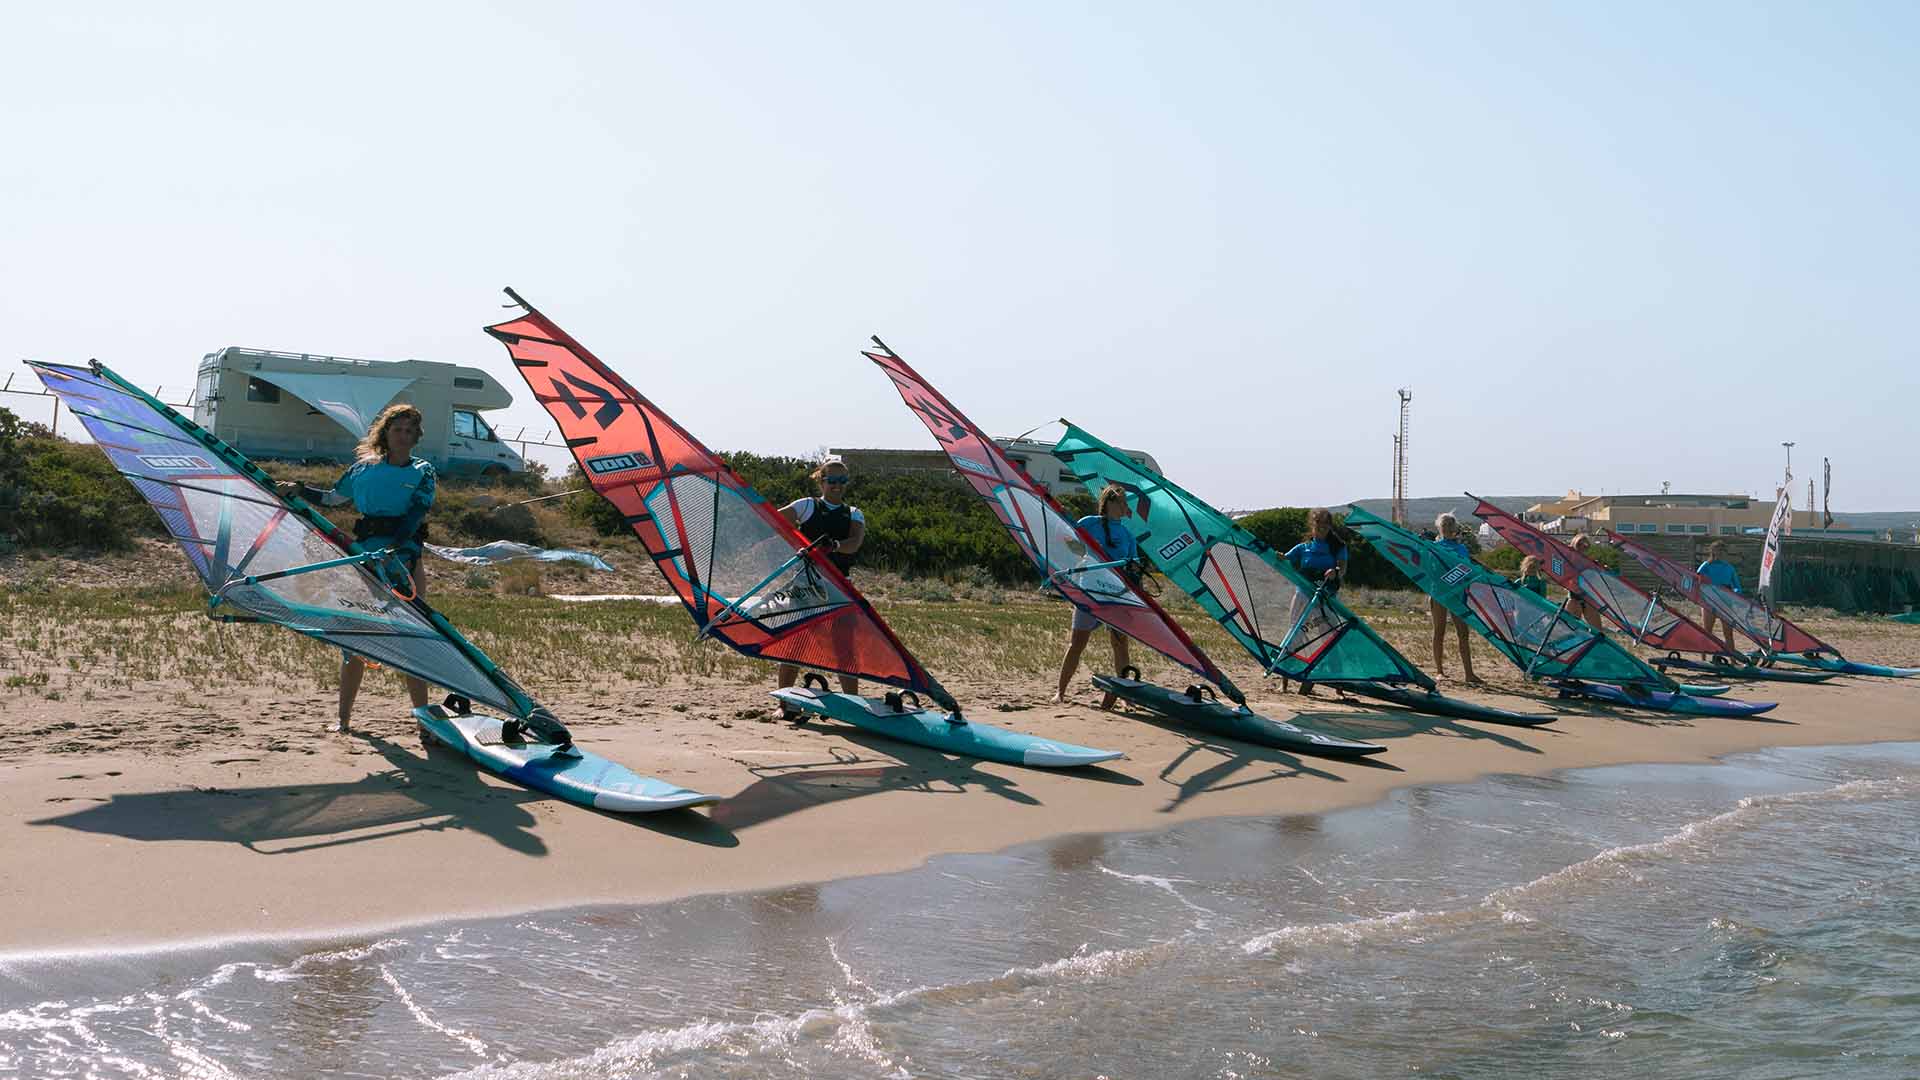 windsurf on the beach